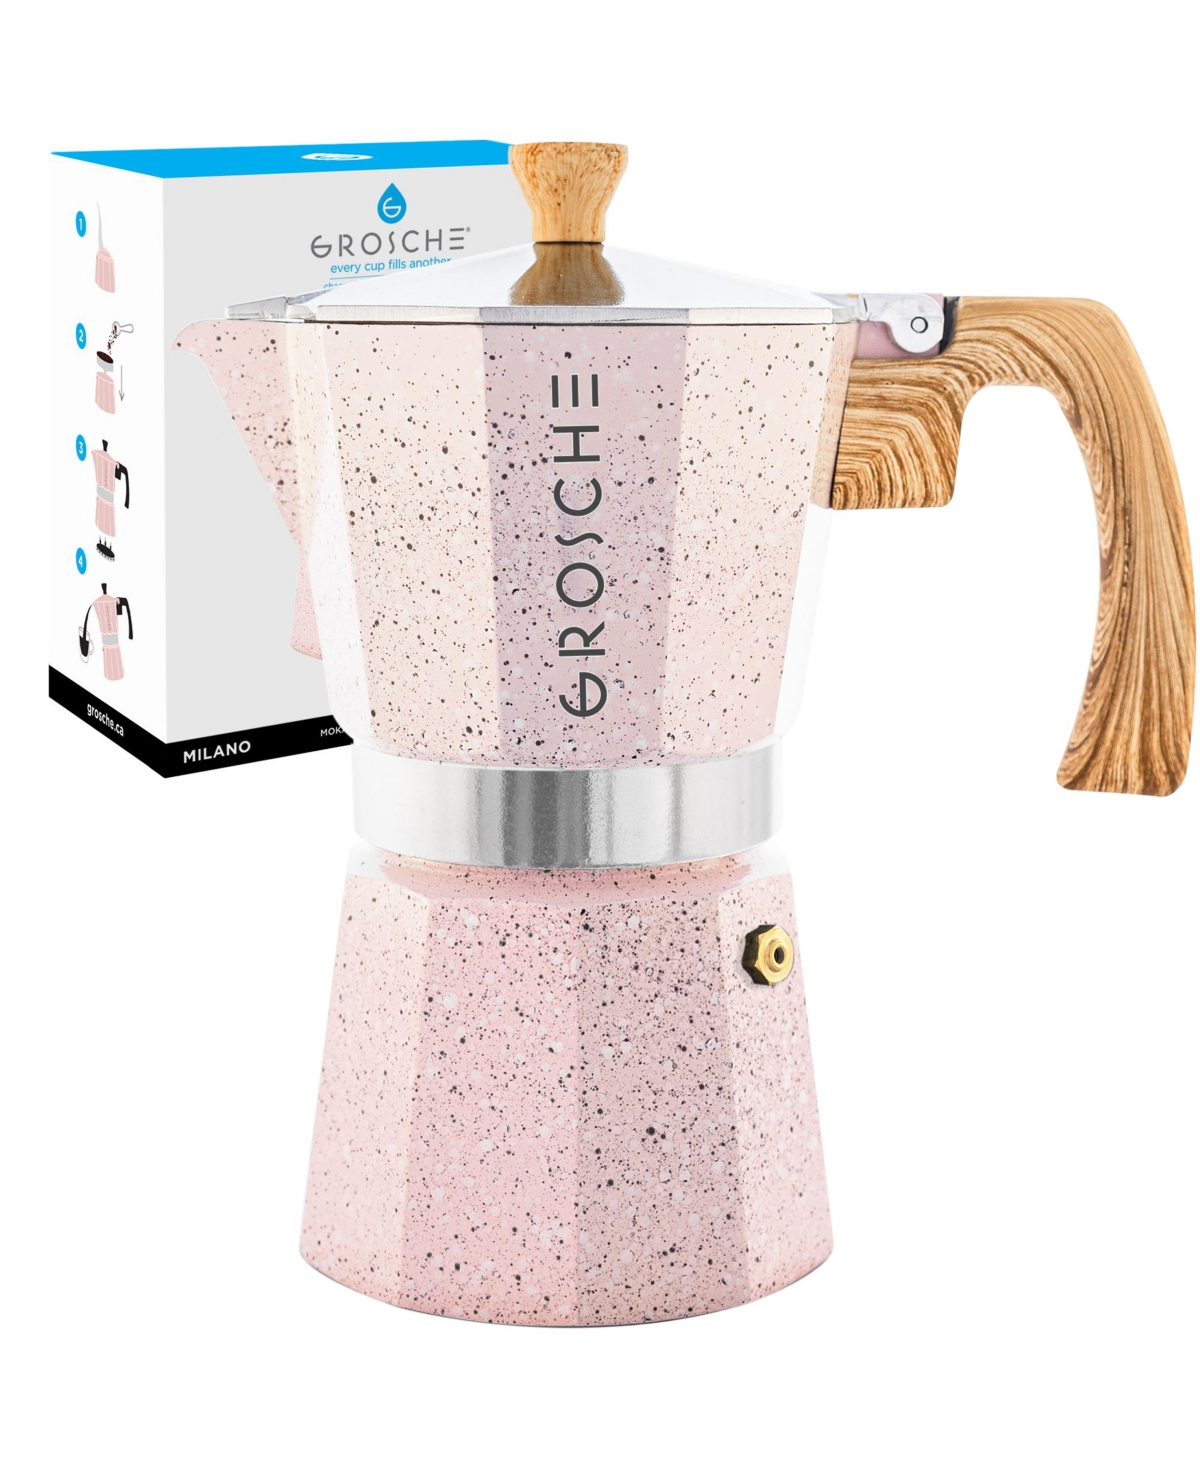 Grosche Milano Stone Stovetop Espresso Maker Moka Pot 12 Cup, 23.6 oz In Blush Pink